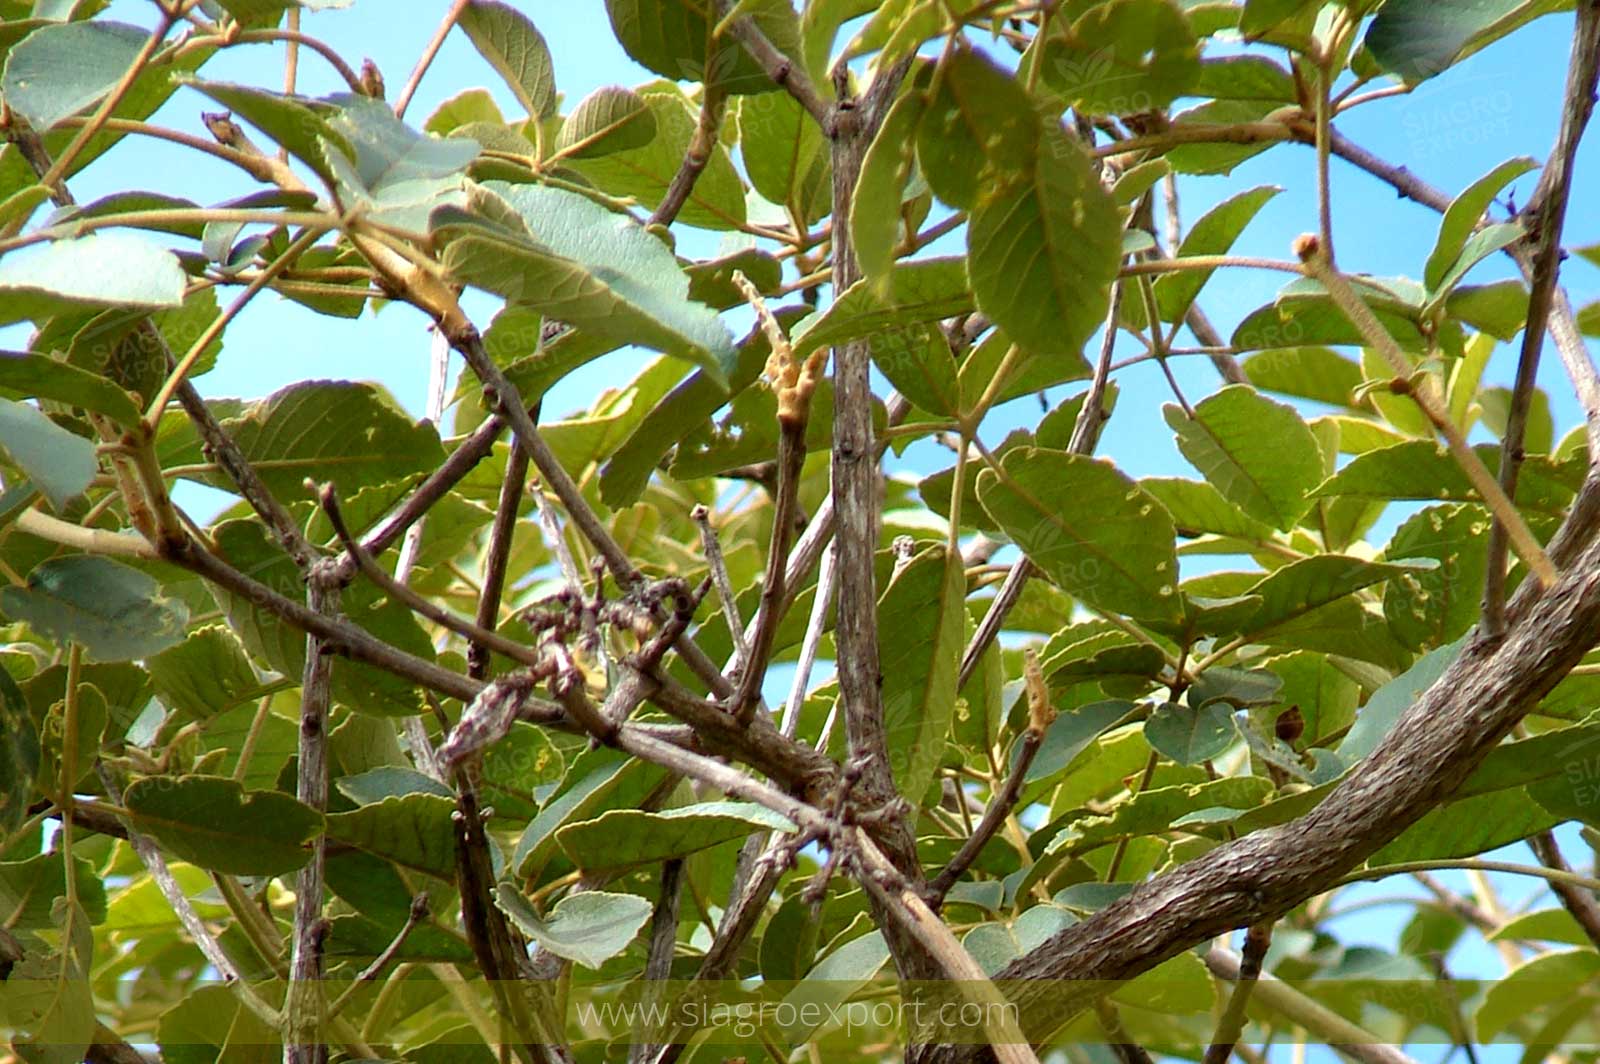 Tahuari (Tabebuia serratifolia)